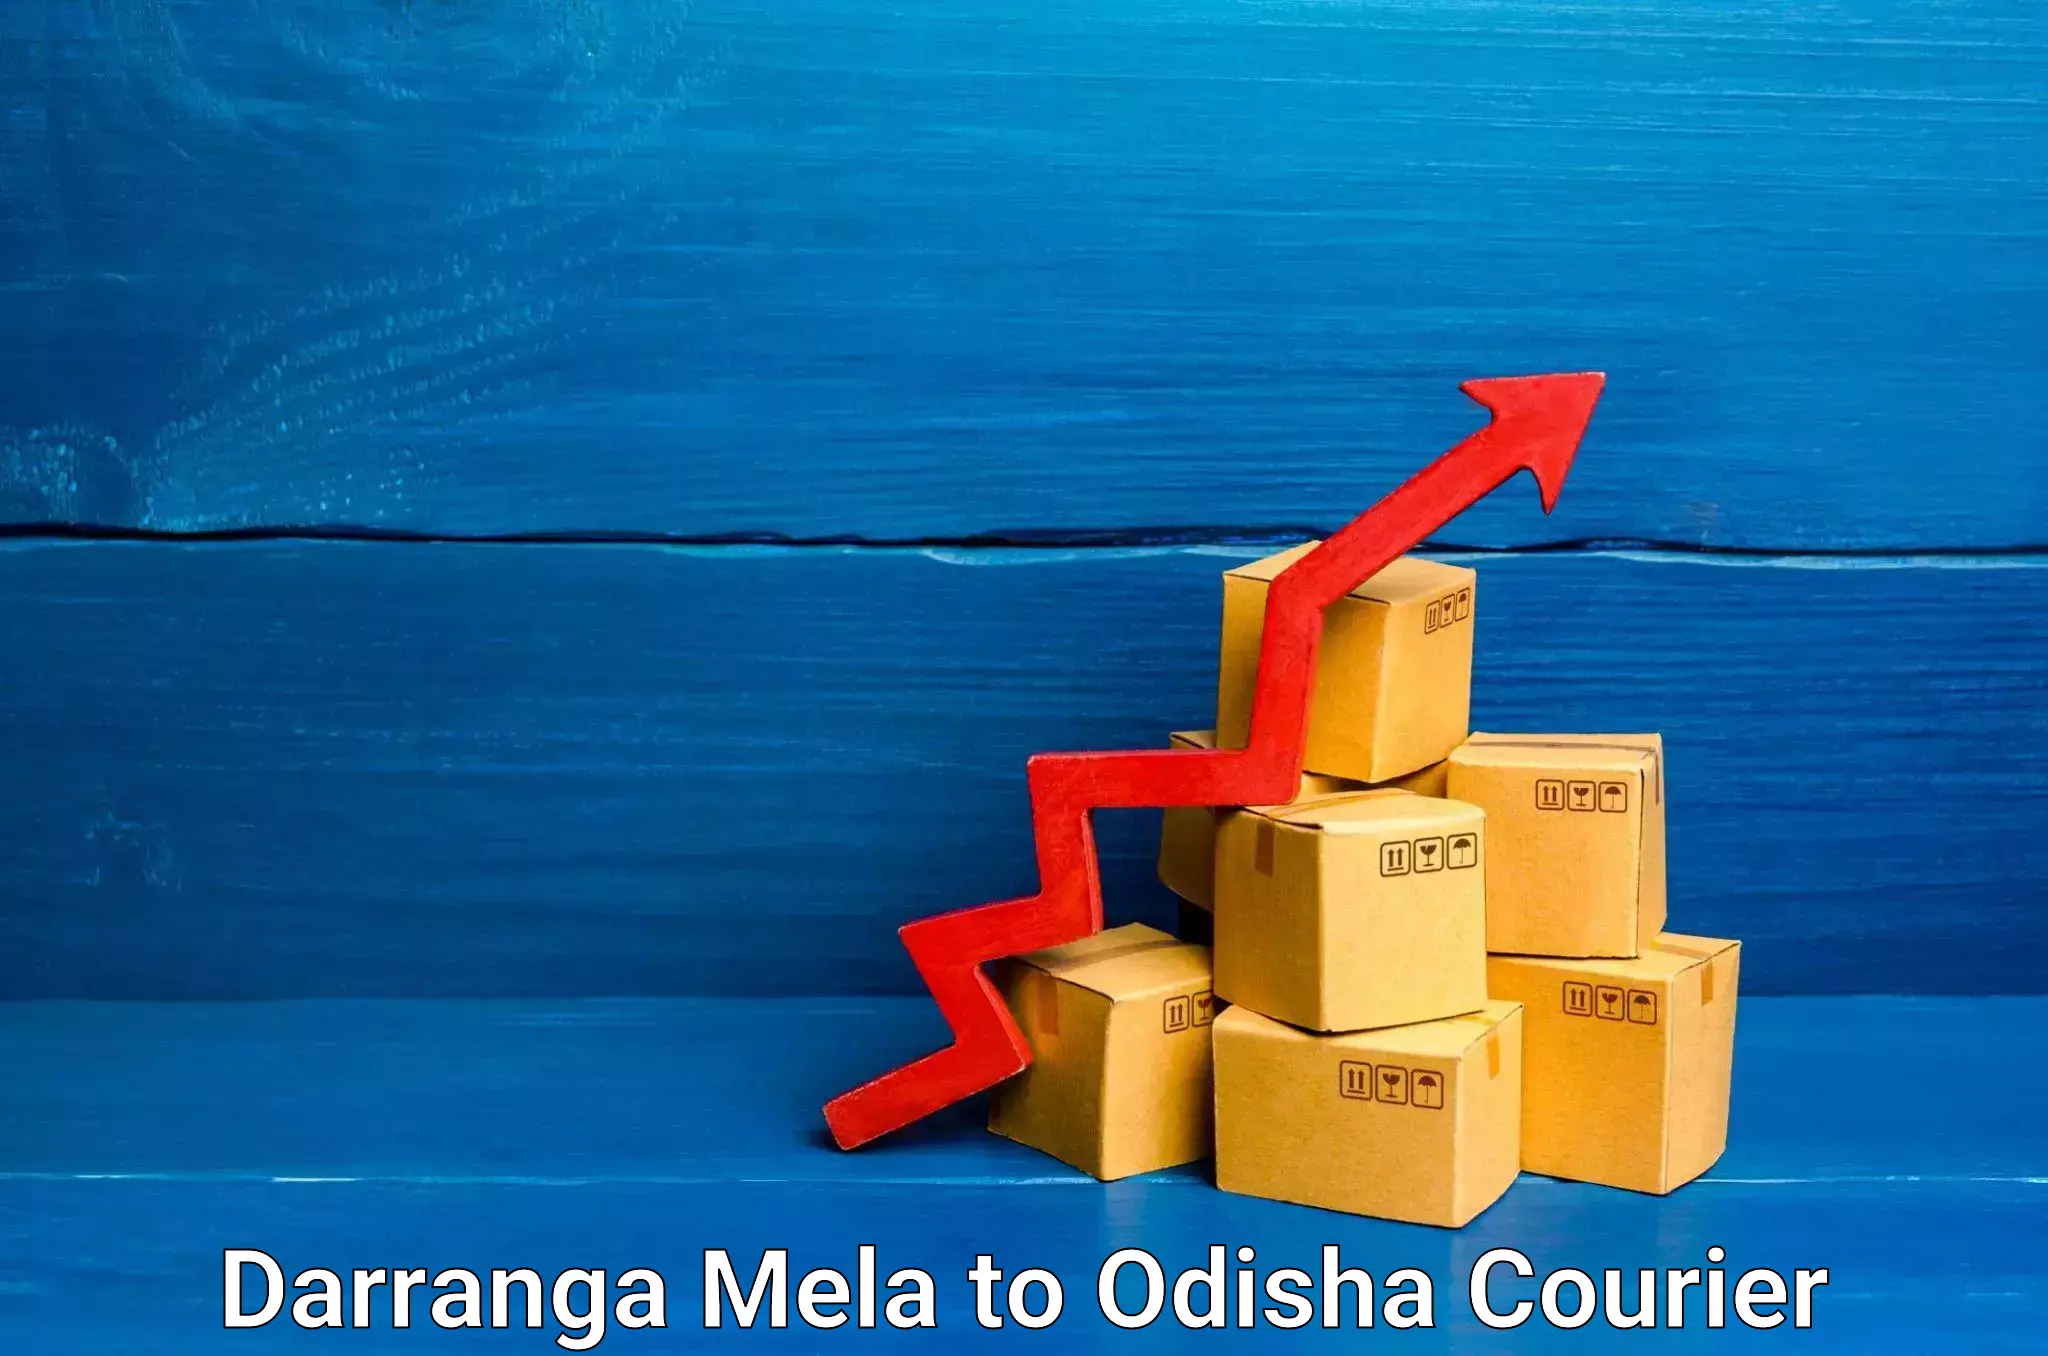 Reliable delivery network Darranga Mela to Muniguda